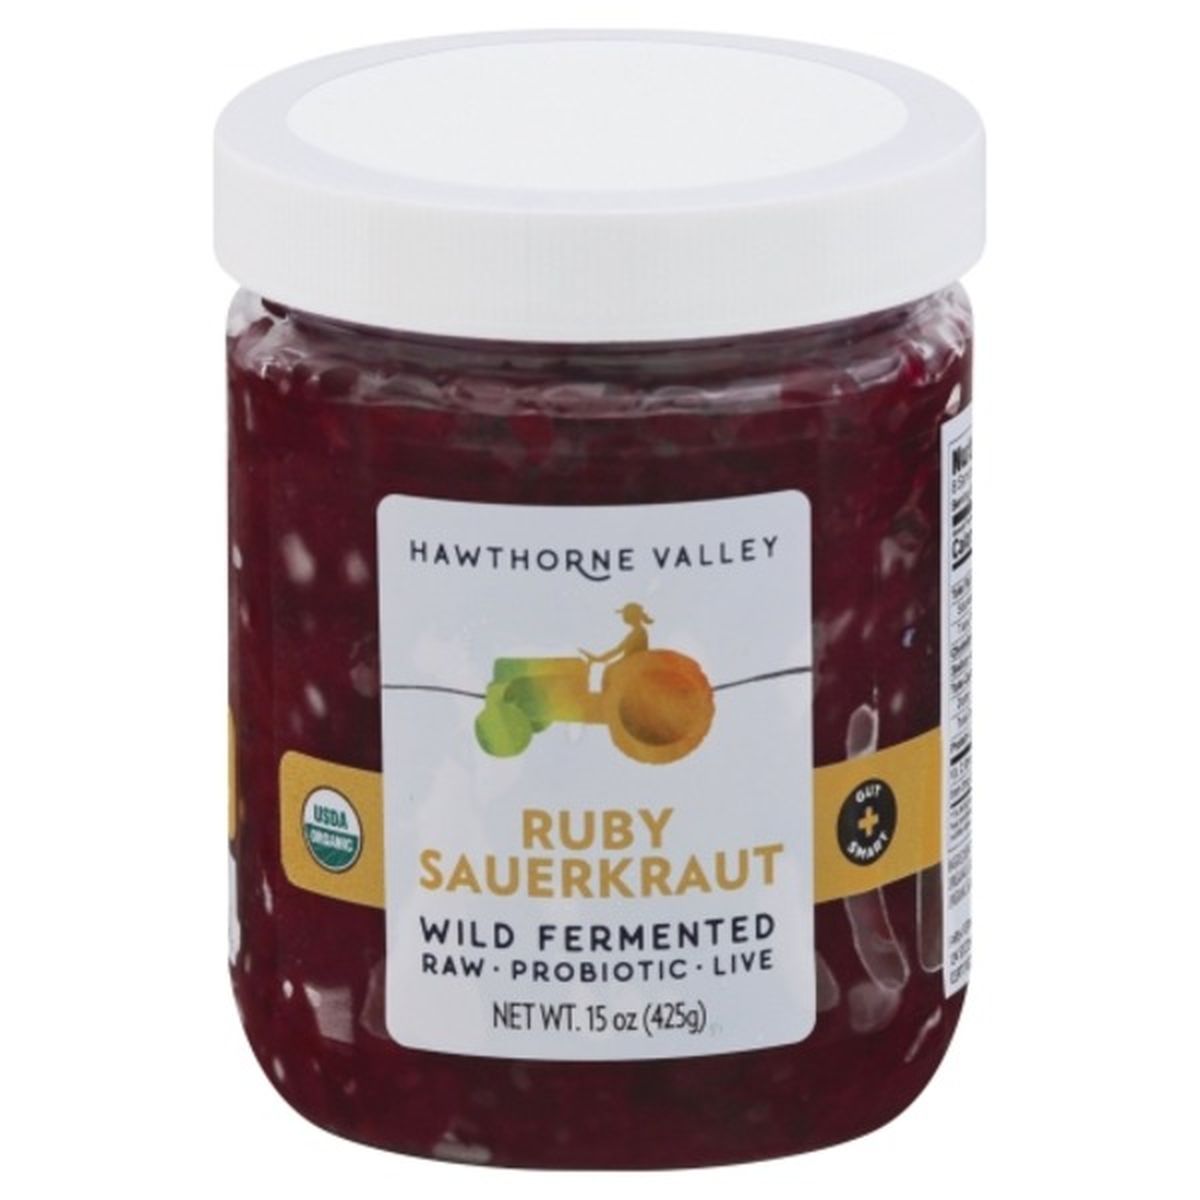 Calories in Hawthorne Valley Sauerkraut, Ruby, Wild Fermented